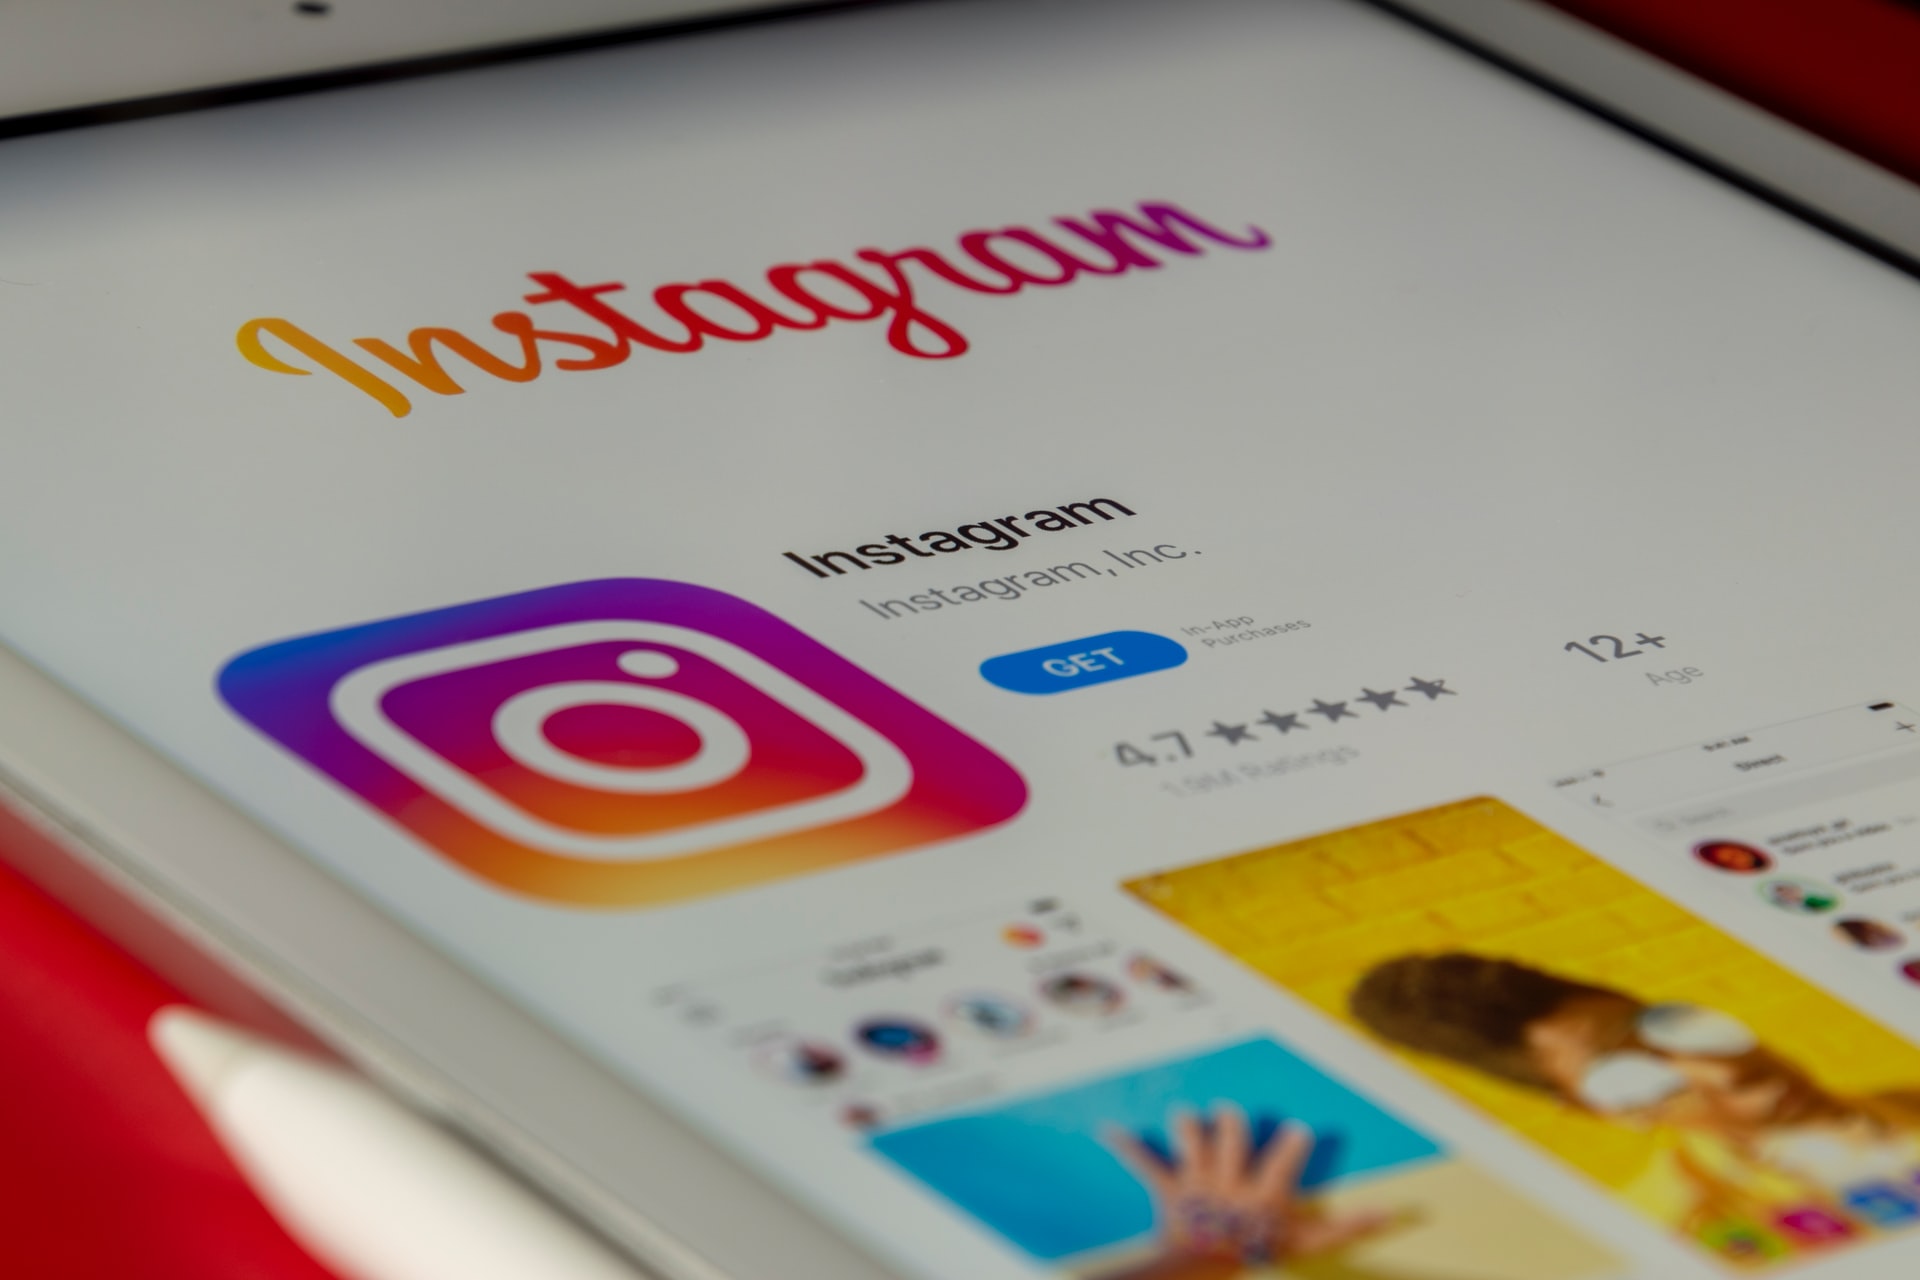 Conta do Instagram suspensa? Falha bloqueia perfis e some com seguidores